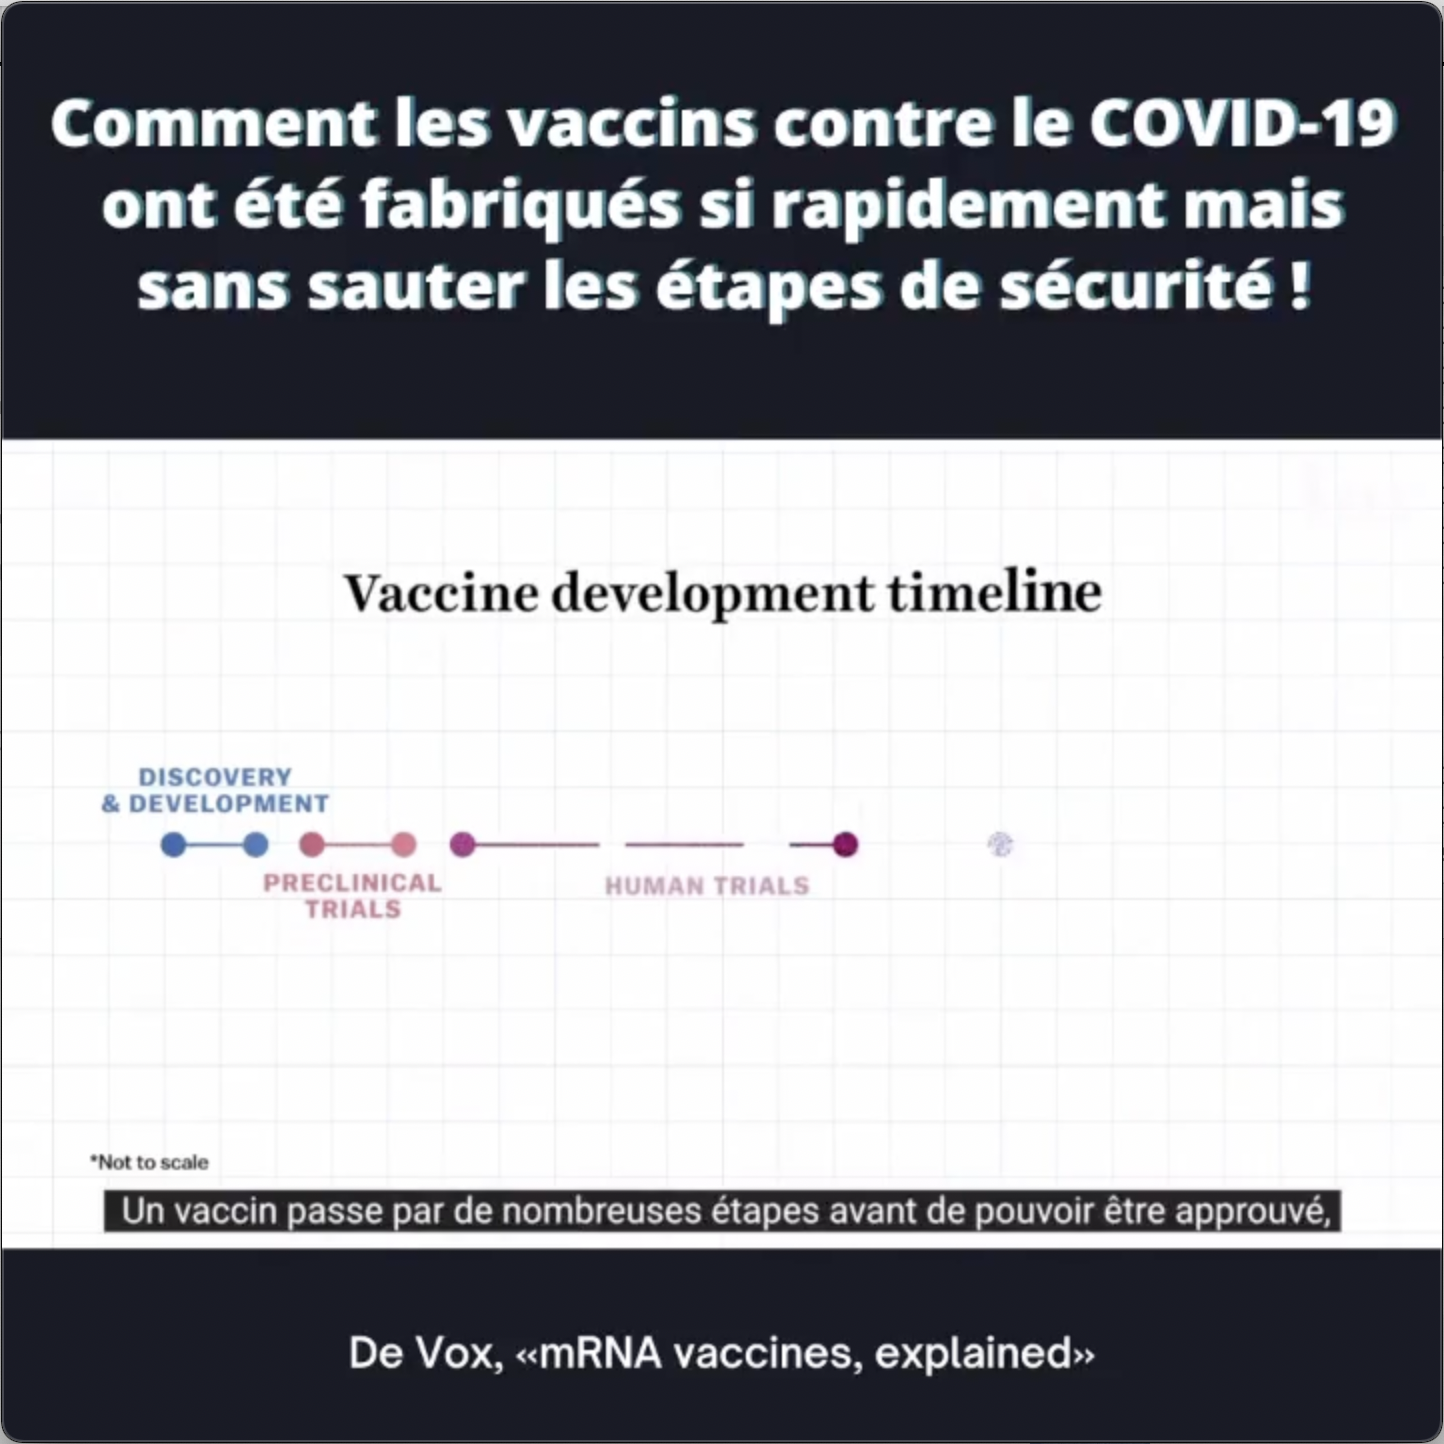 Comment les vaccins COVID-19 ont-ils été fabriqués si rapidement ?